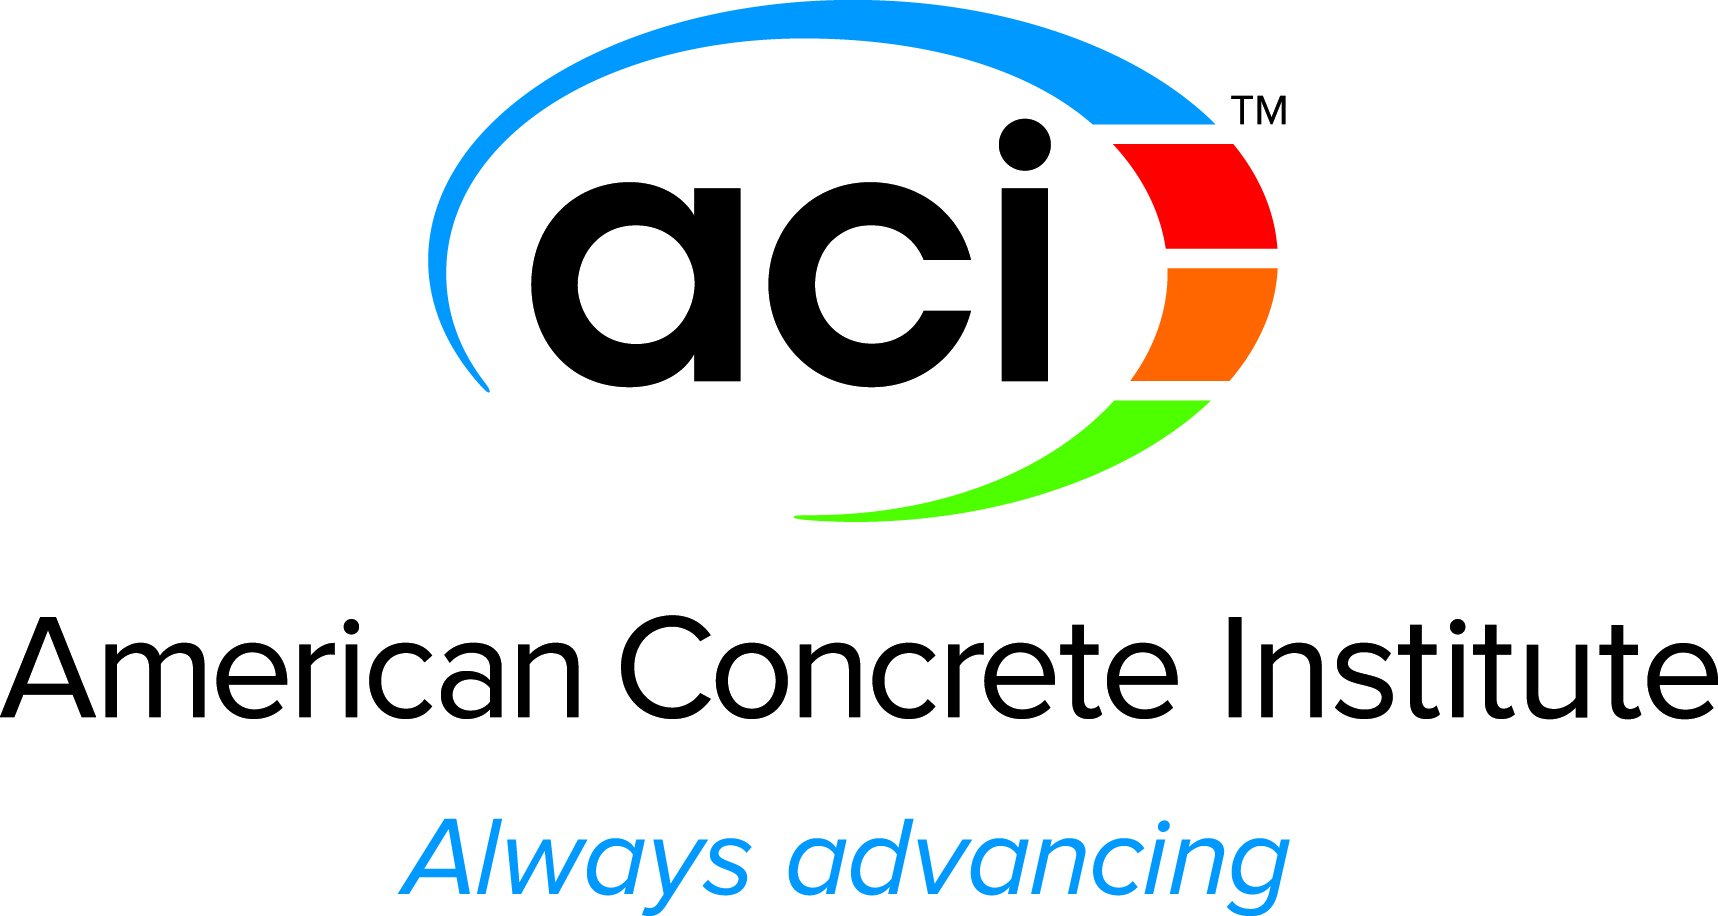 American Concrete Institute (ACI) logo